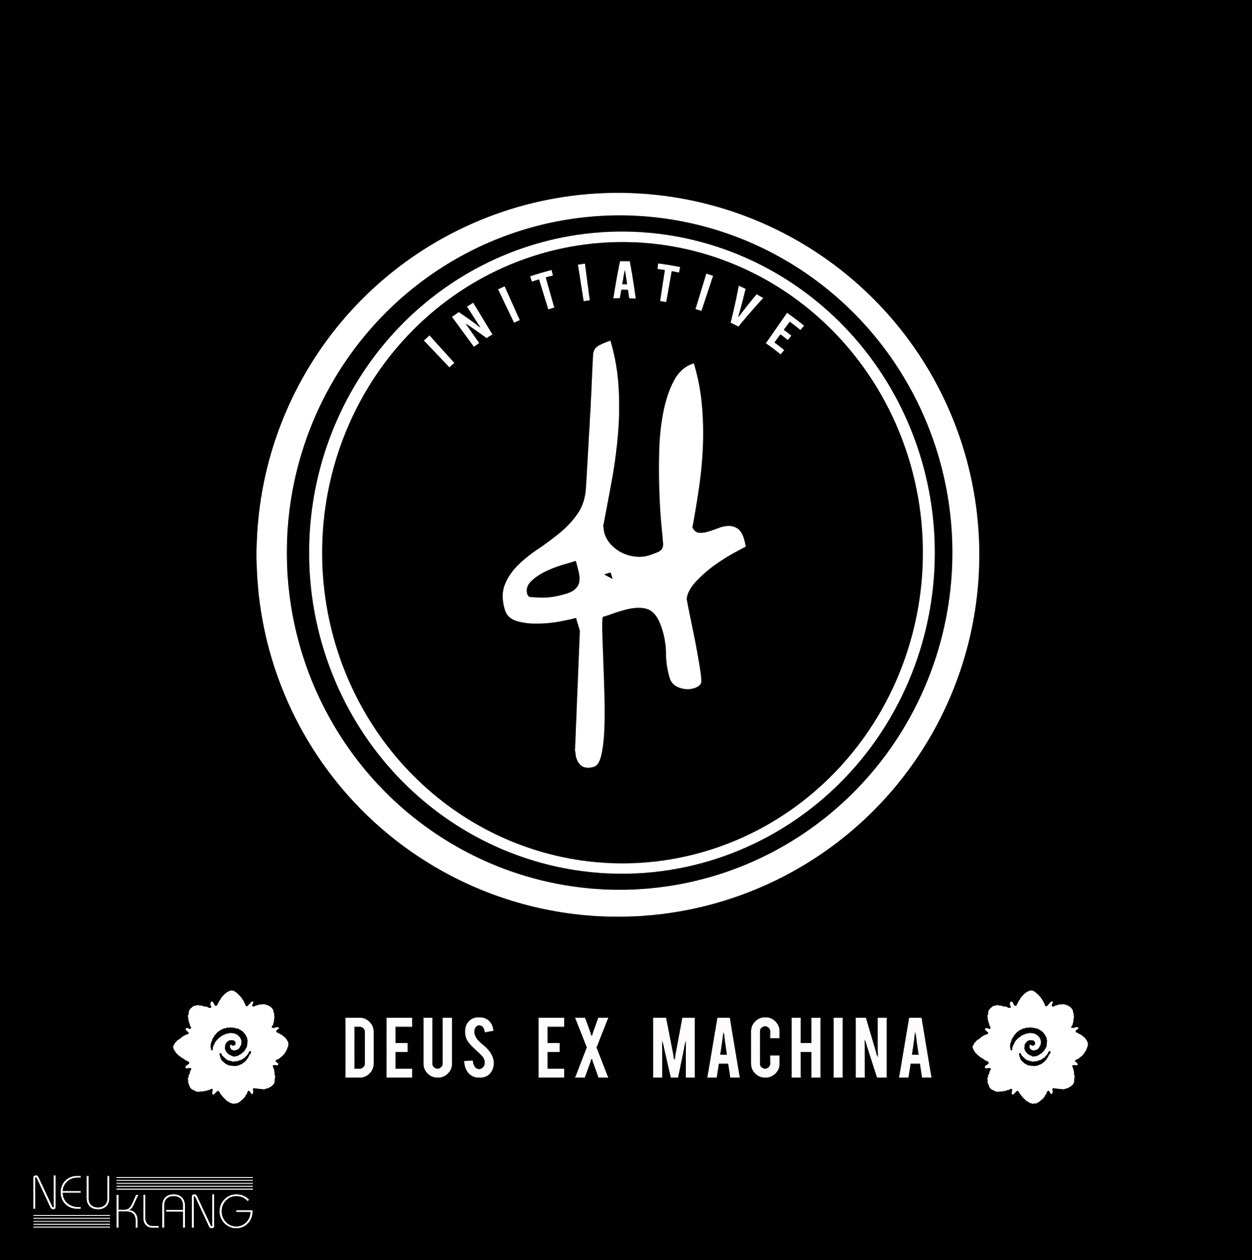 Initiative - Deus Ex Machina